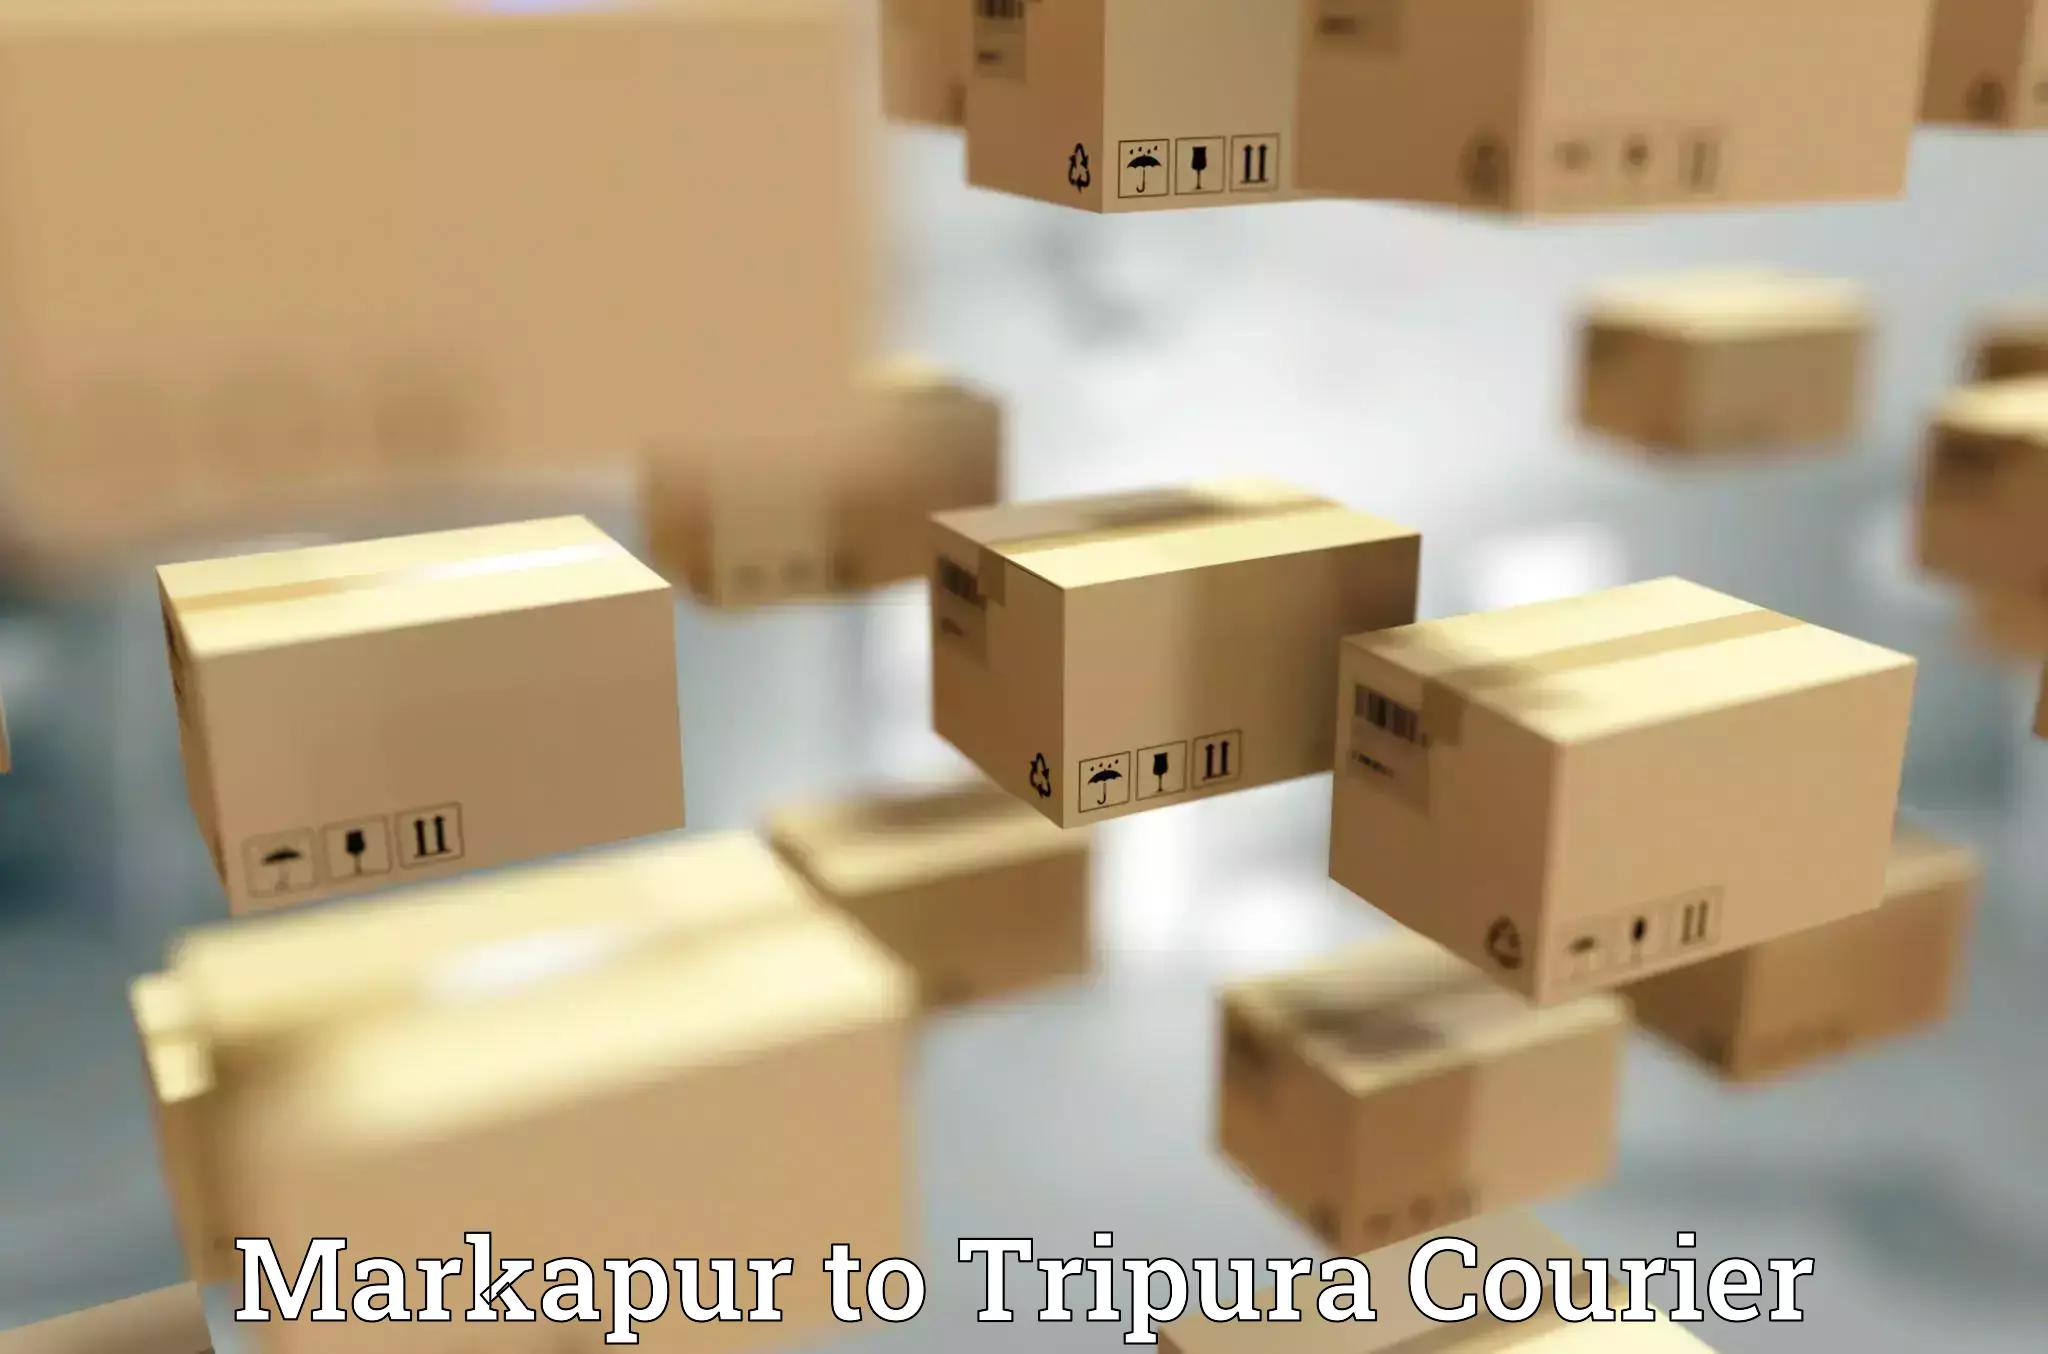 Efficient parcel transport in Markapur to Manughat